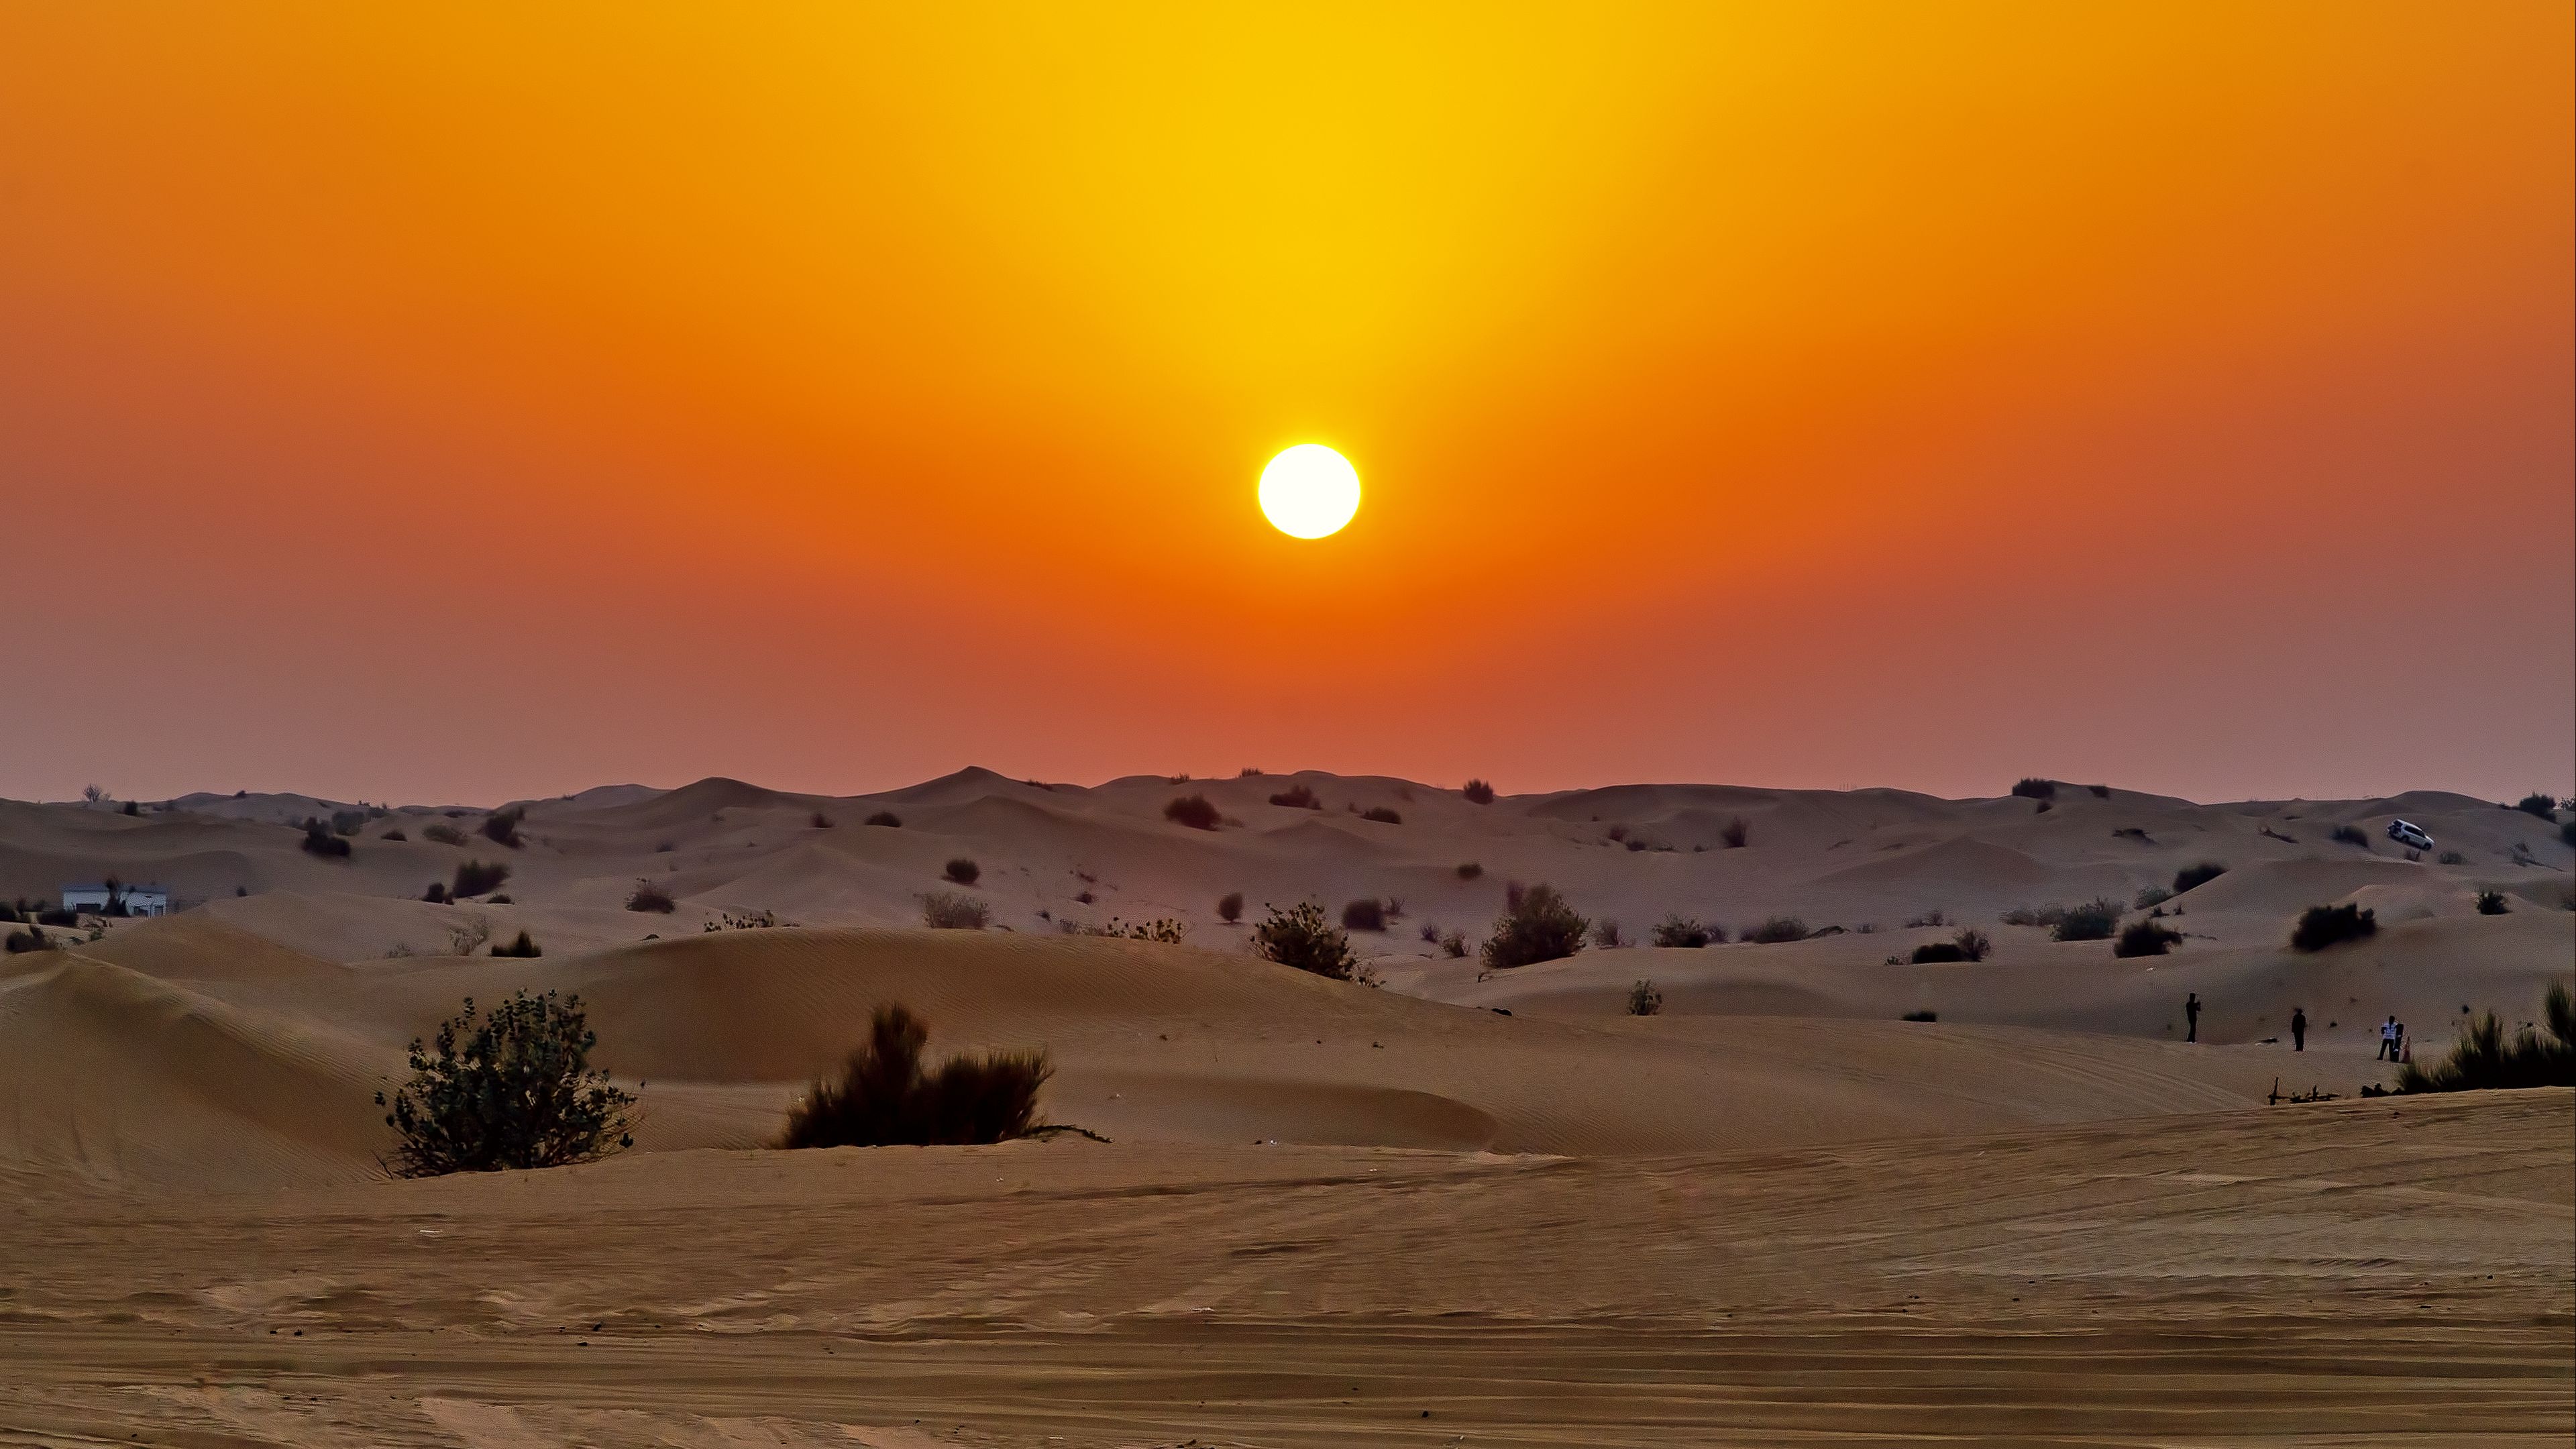 Download Wallpaper 3840X2160 Desert, Sunset, Dunes, Sand 4K Uhd 16:9 Hd